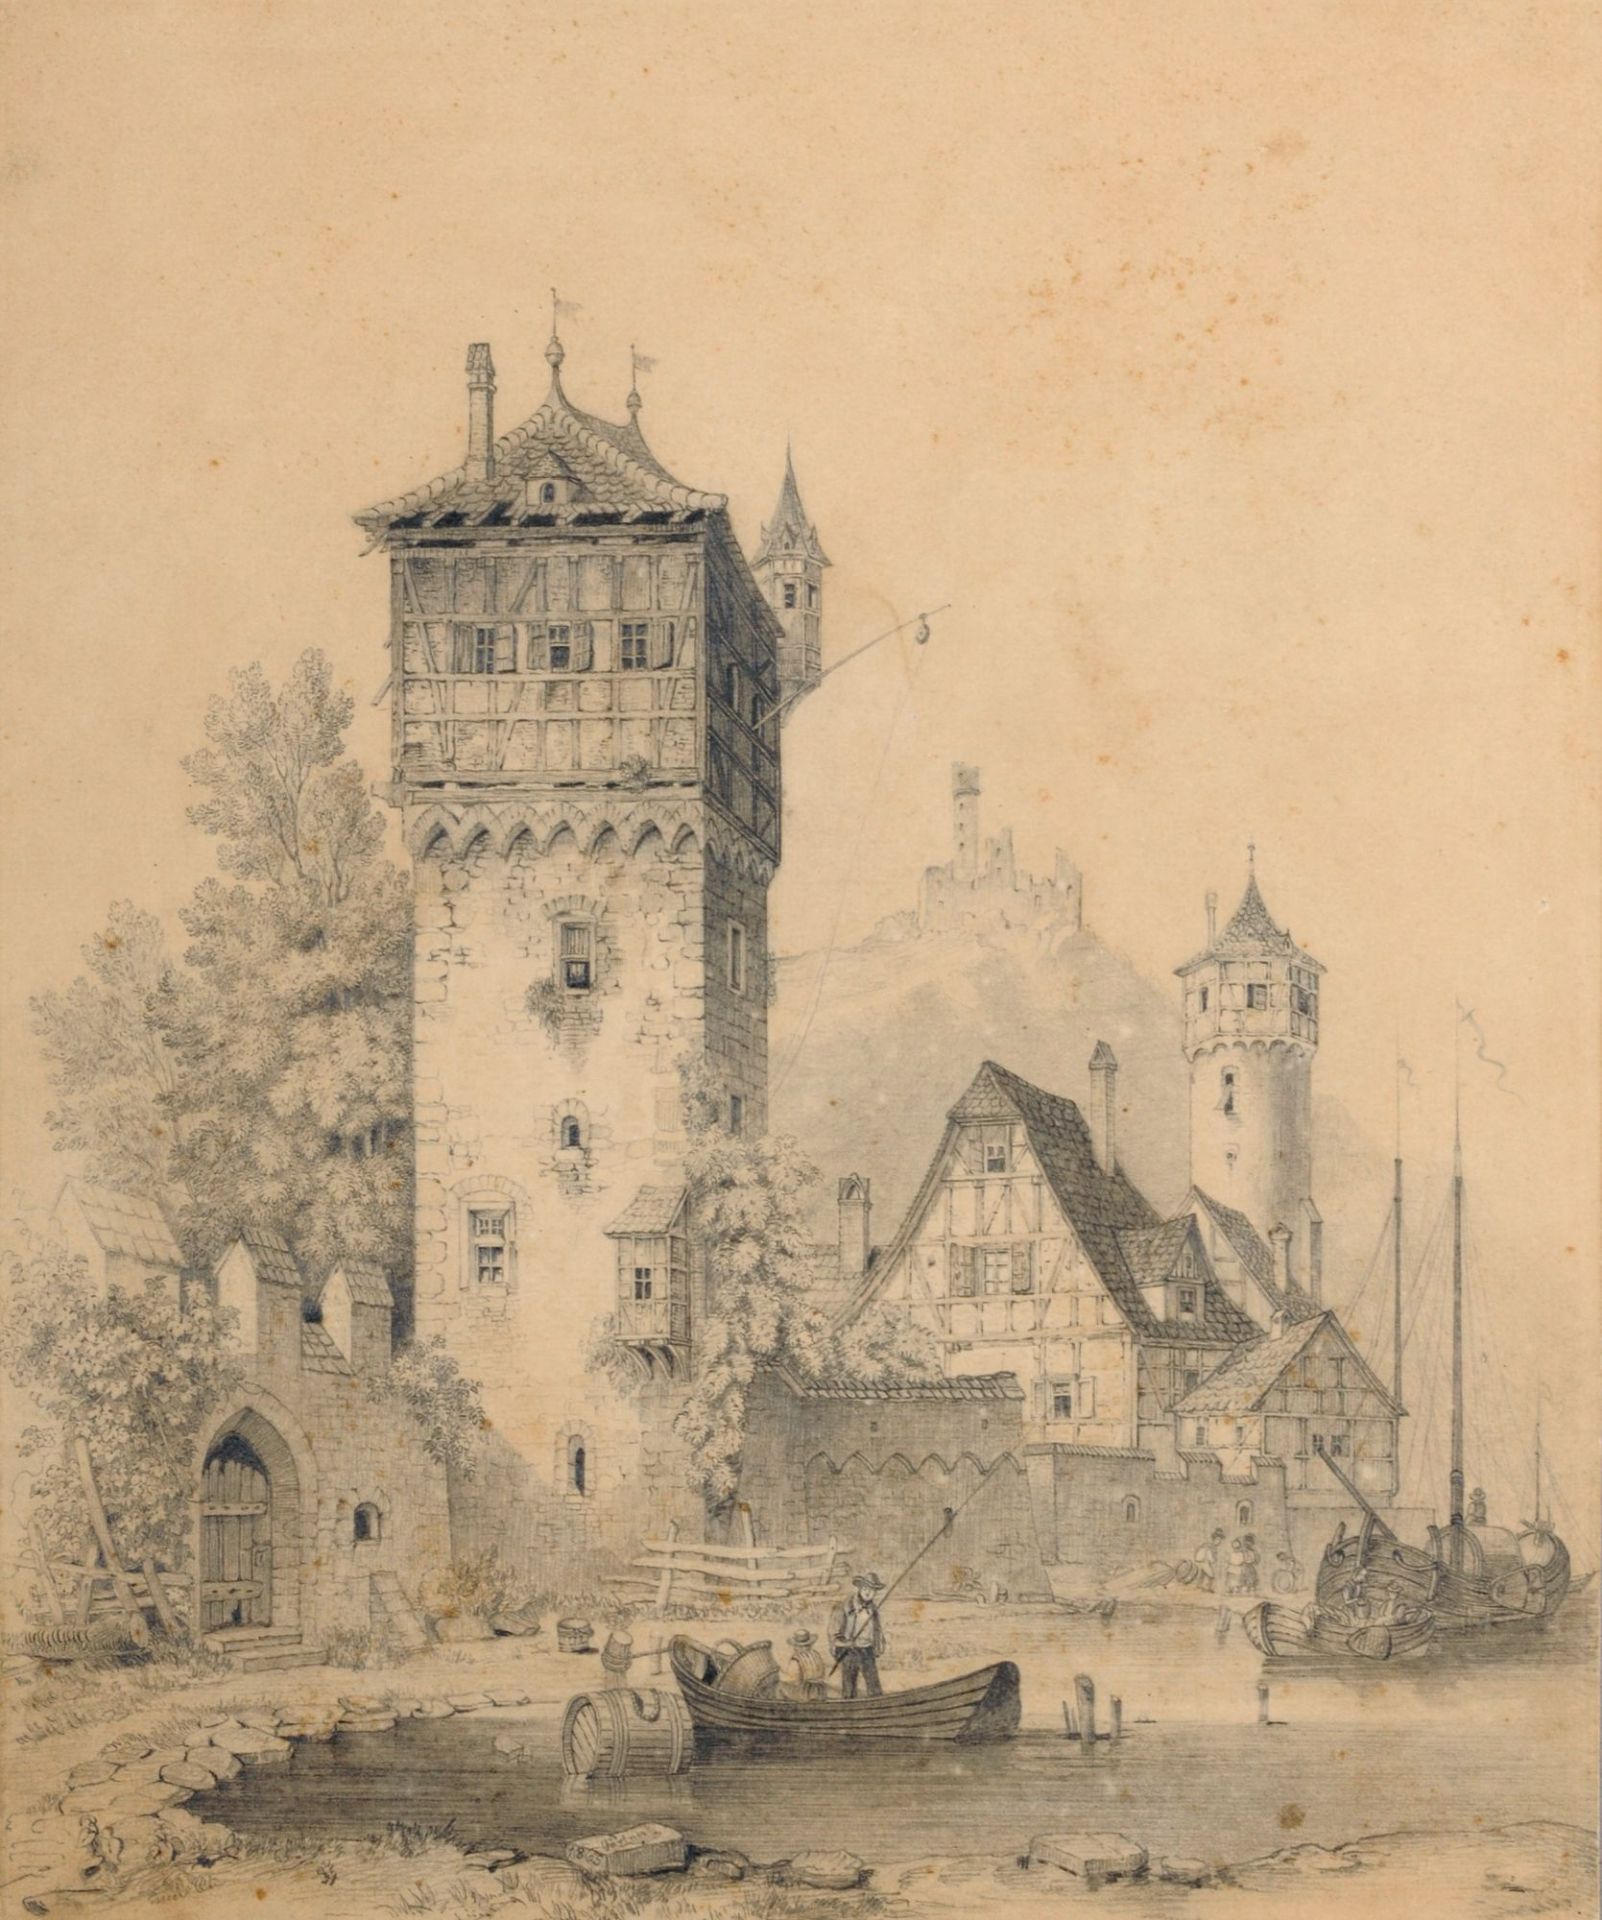 Heinrich Gärtner, Stadtmauer mit Türmen, im Hintergrund eine Burg. 1865.